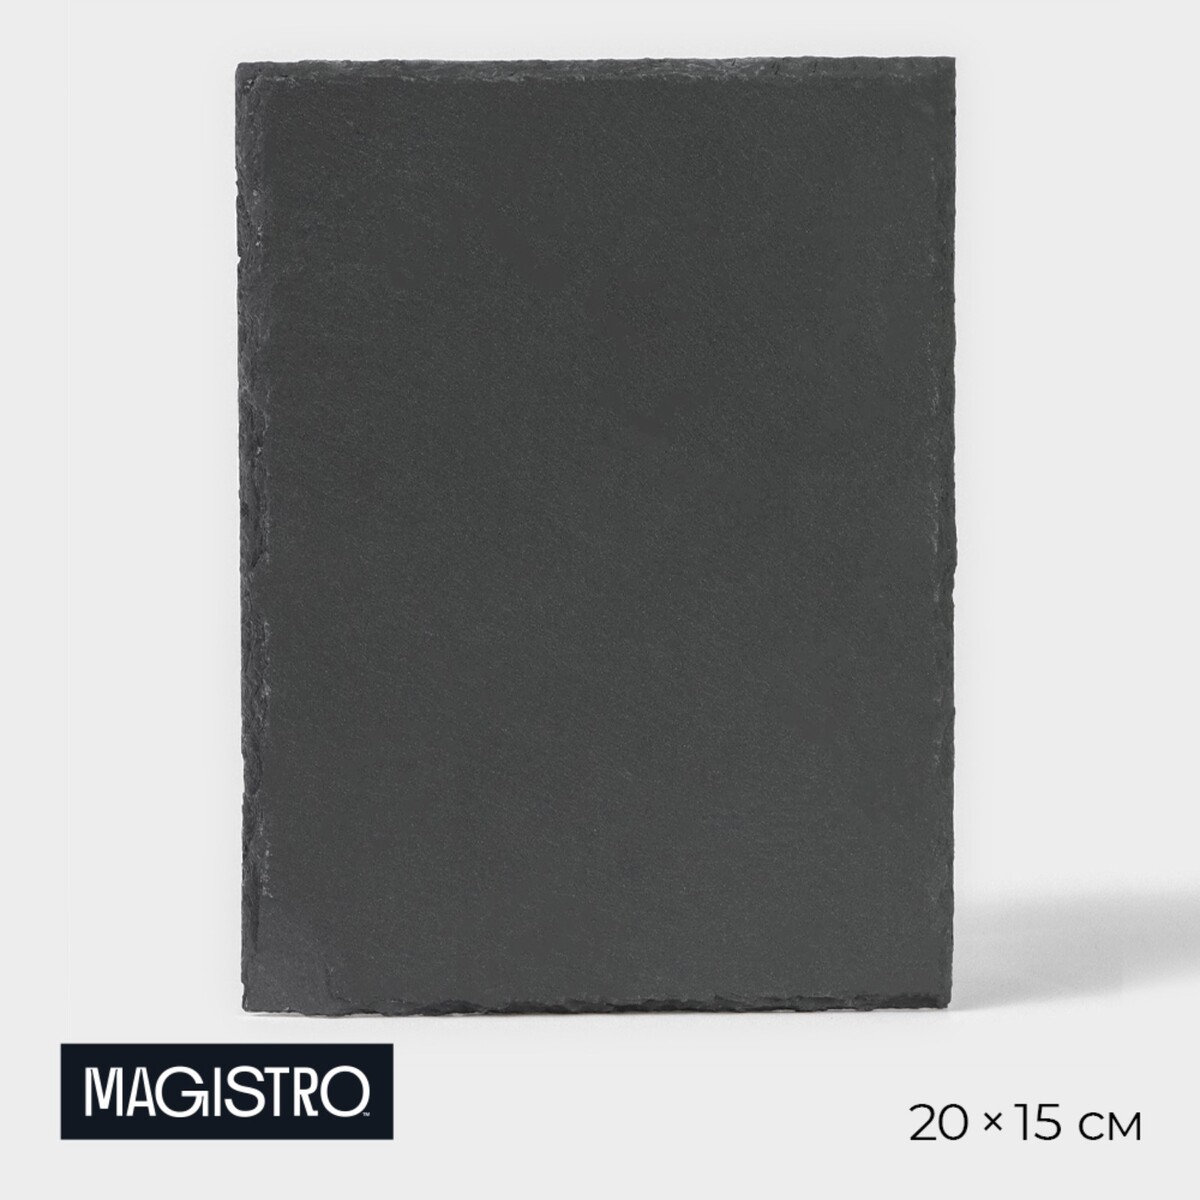 Доска для подачи из сланца magistro valley, 20×15 см доска для подачи из сланца magistro valley d 40 см